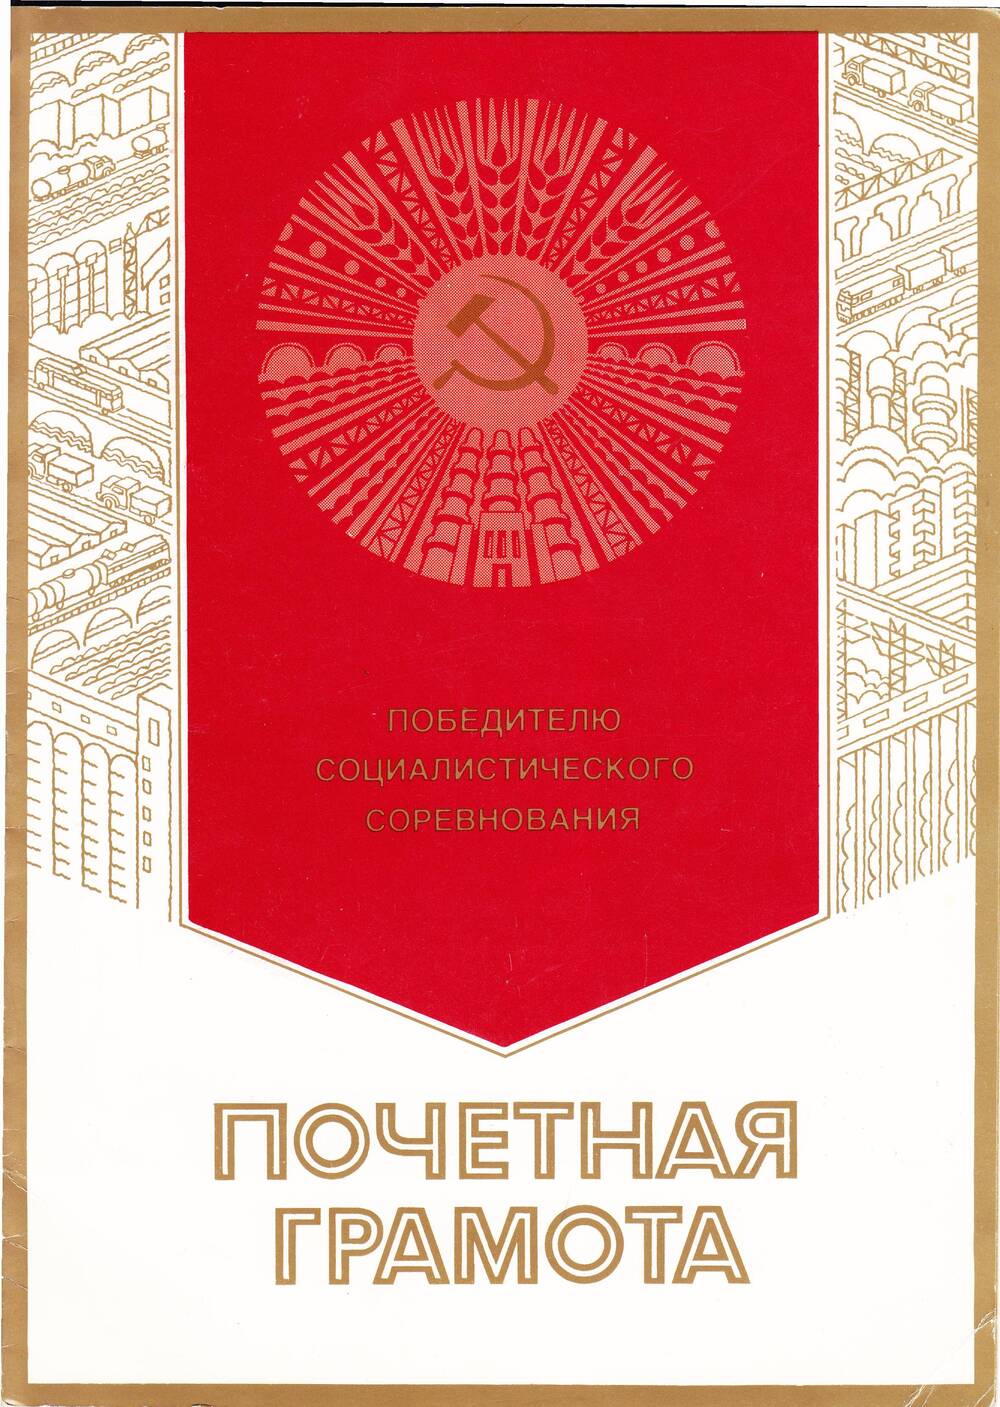 Почетная грамота. Награжден Большунов В.А. за достигнутые успехи в социалистическом соревновании в честь дня строителя.